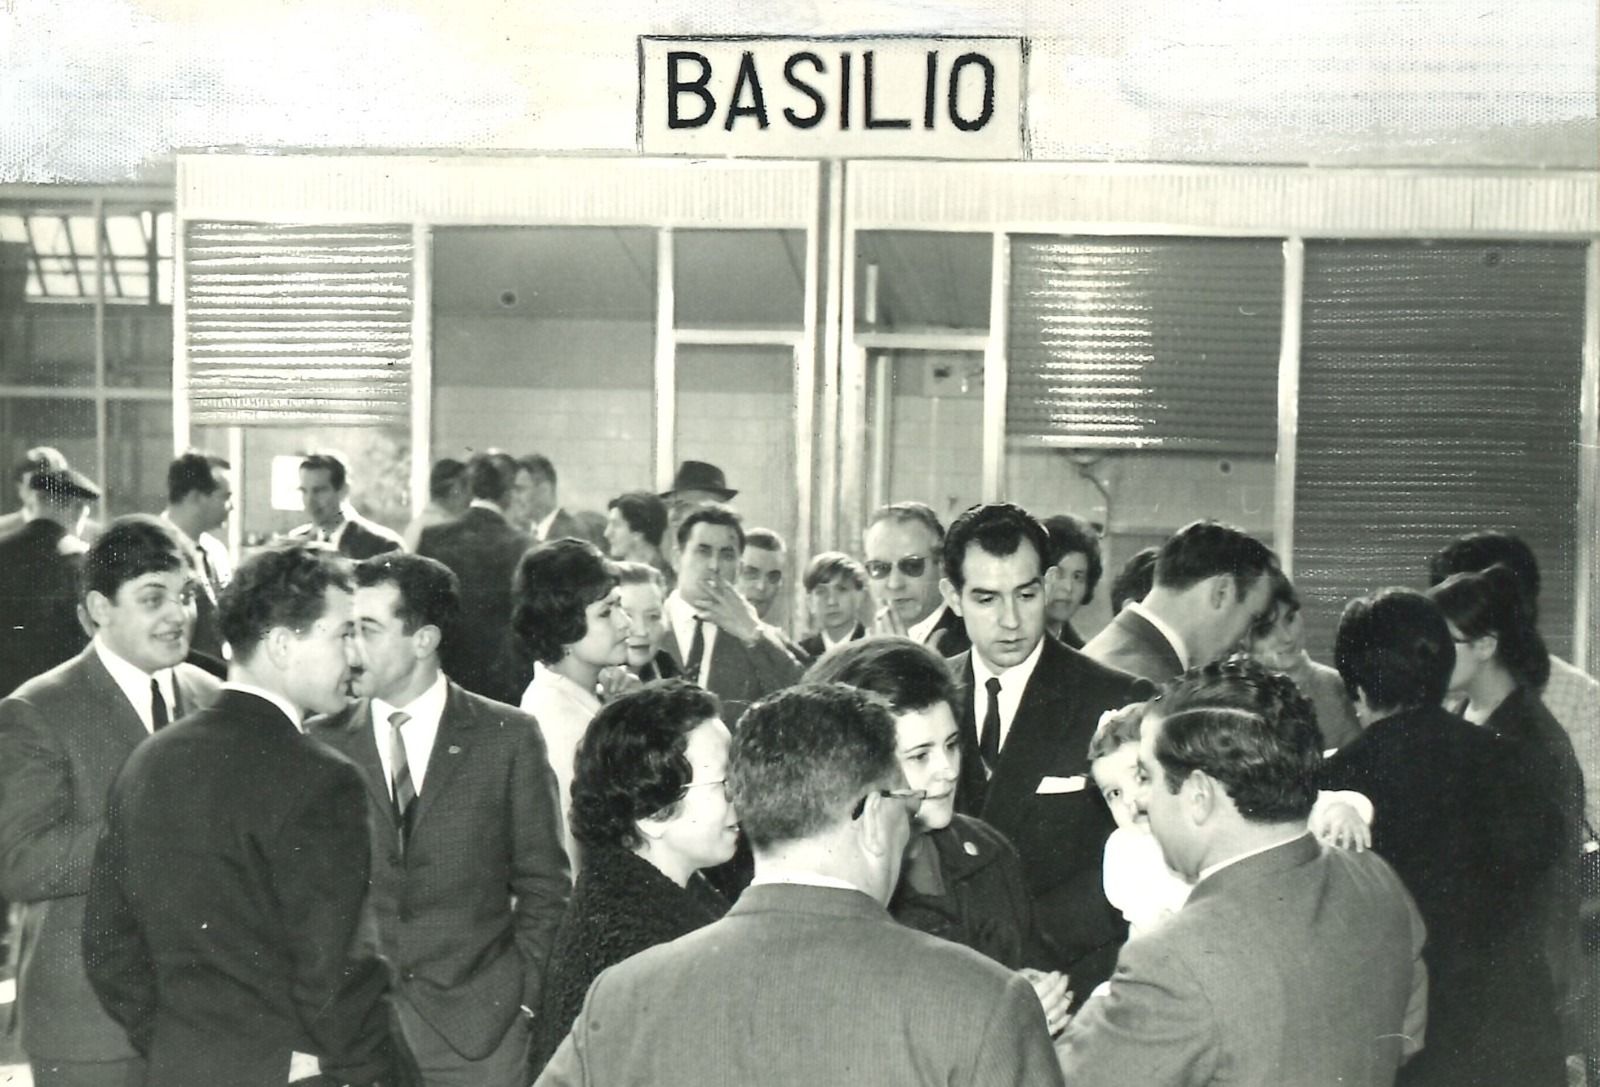 Basilio, el gran sueño que creció entre frío: historia en imágenes de la empresa pionera del congelado en Asturias